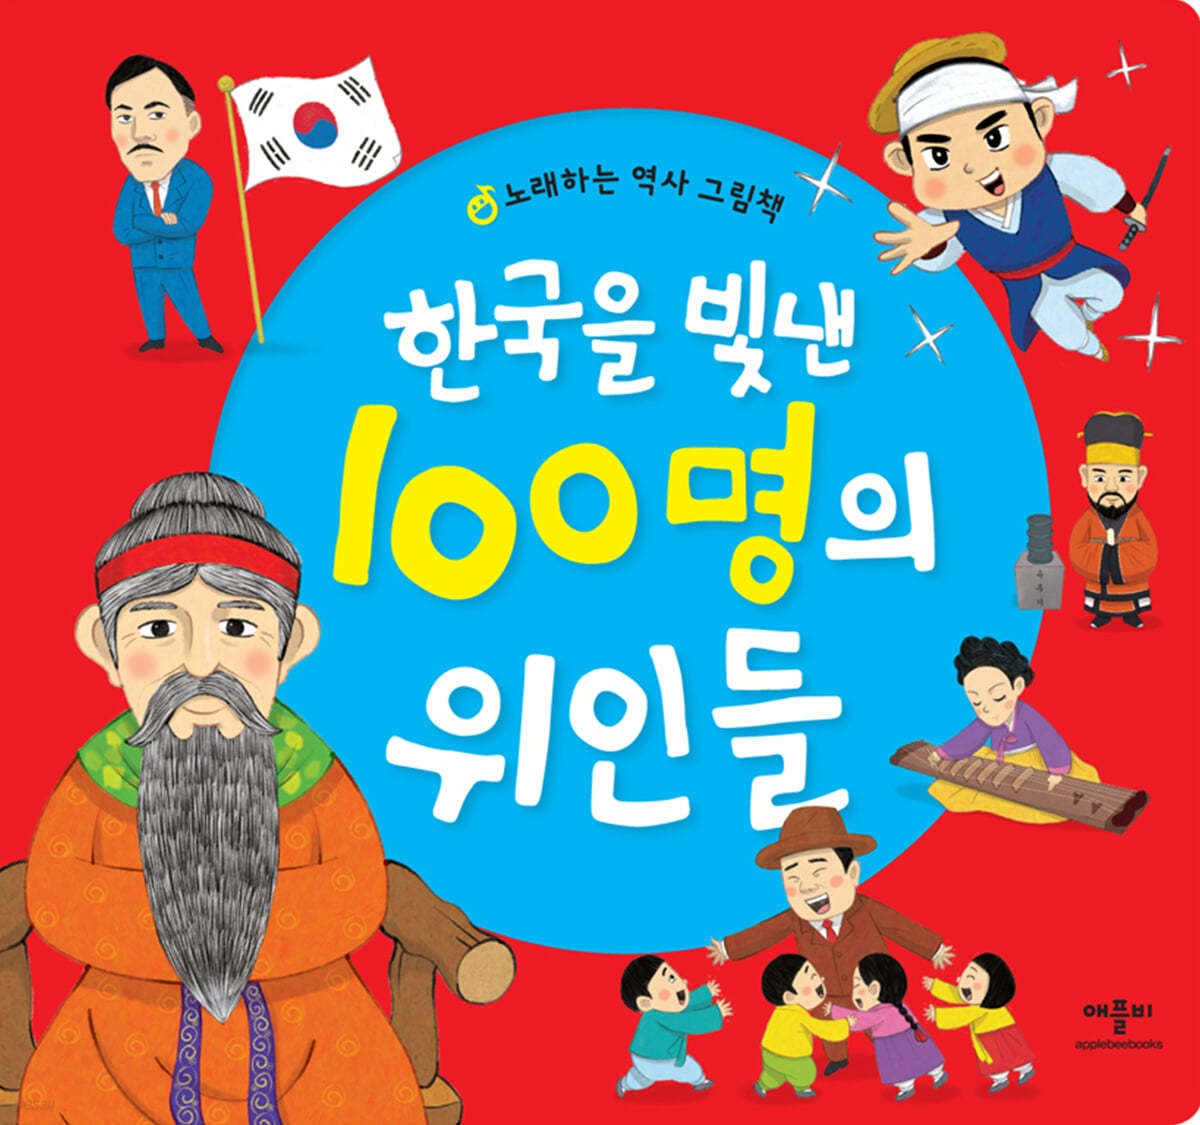 한국을 빛낸 100명의 위인들